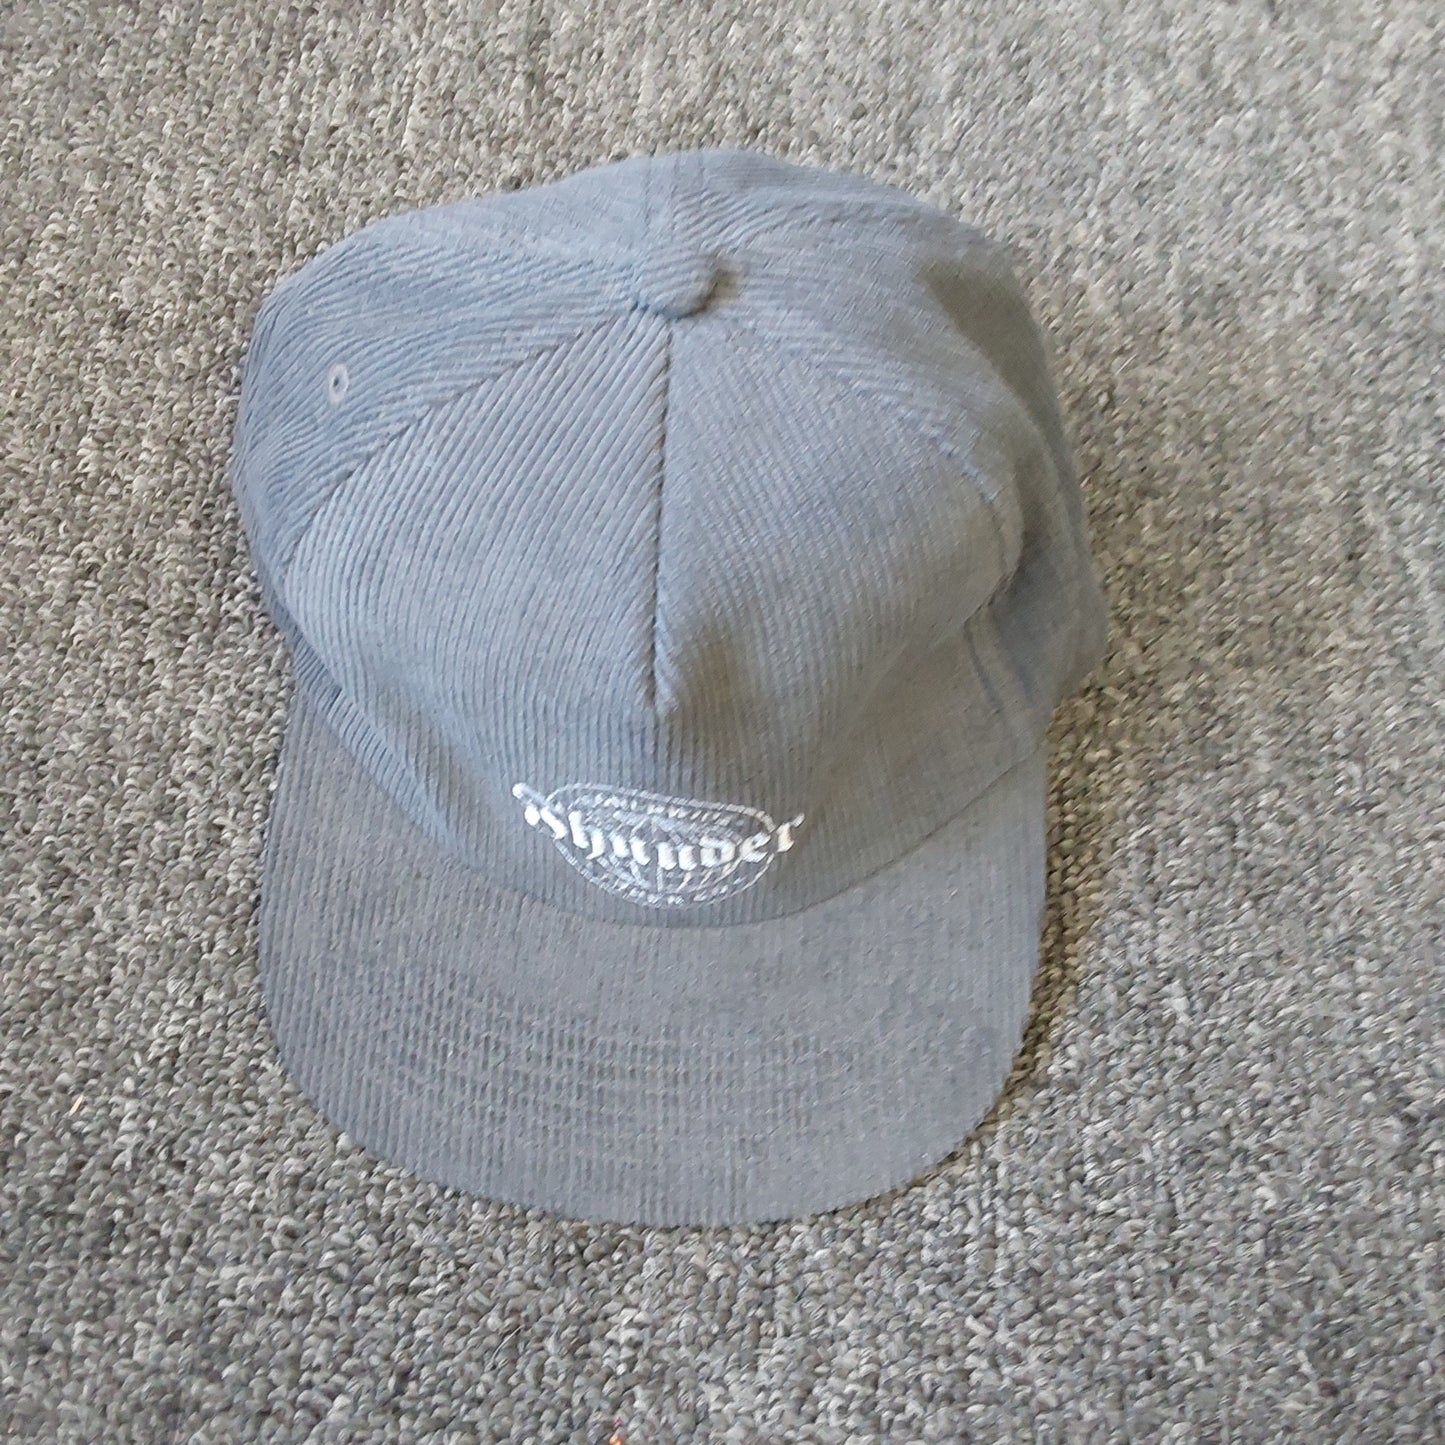 Thunder Worldwide Snapback Hat Grey/White